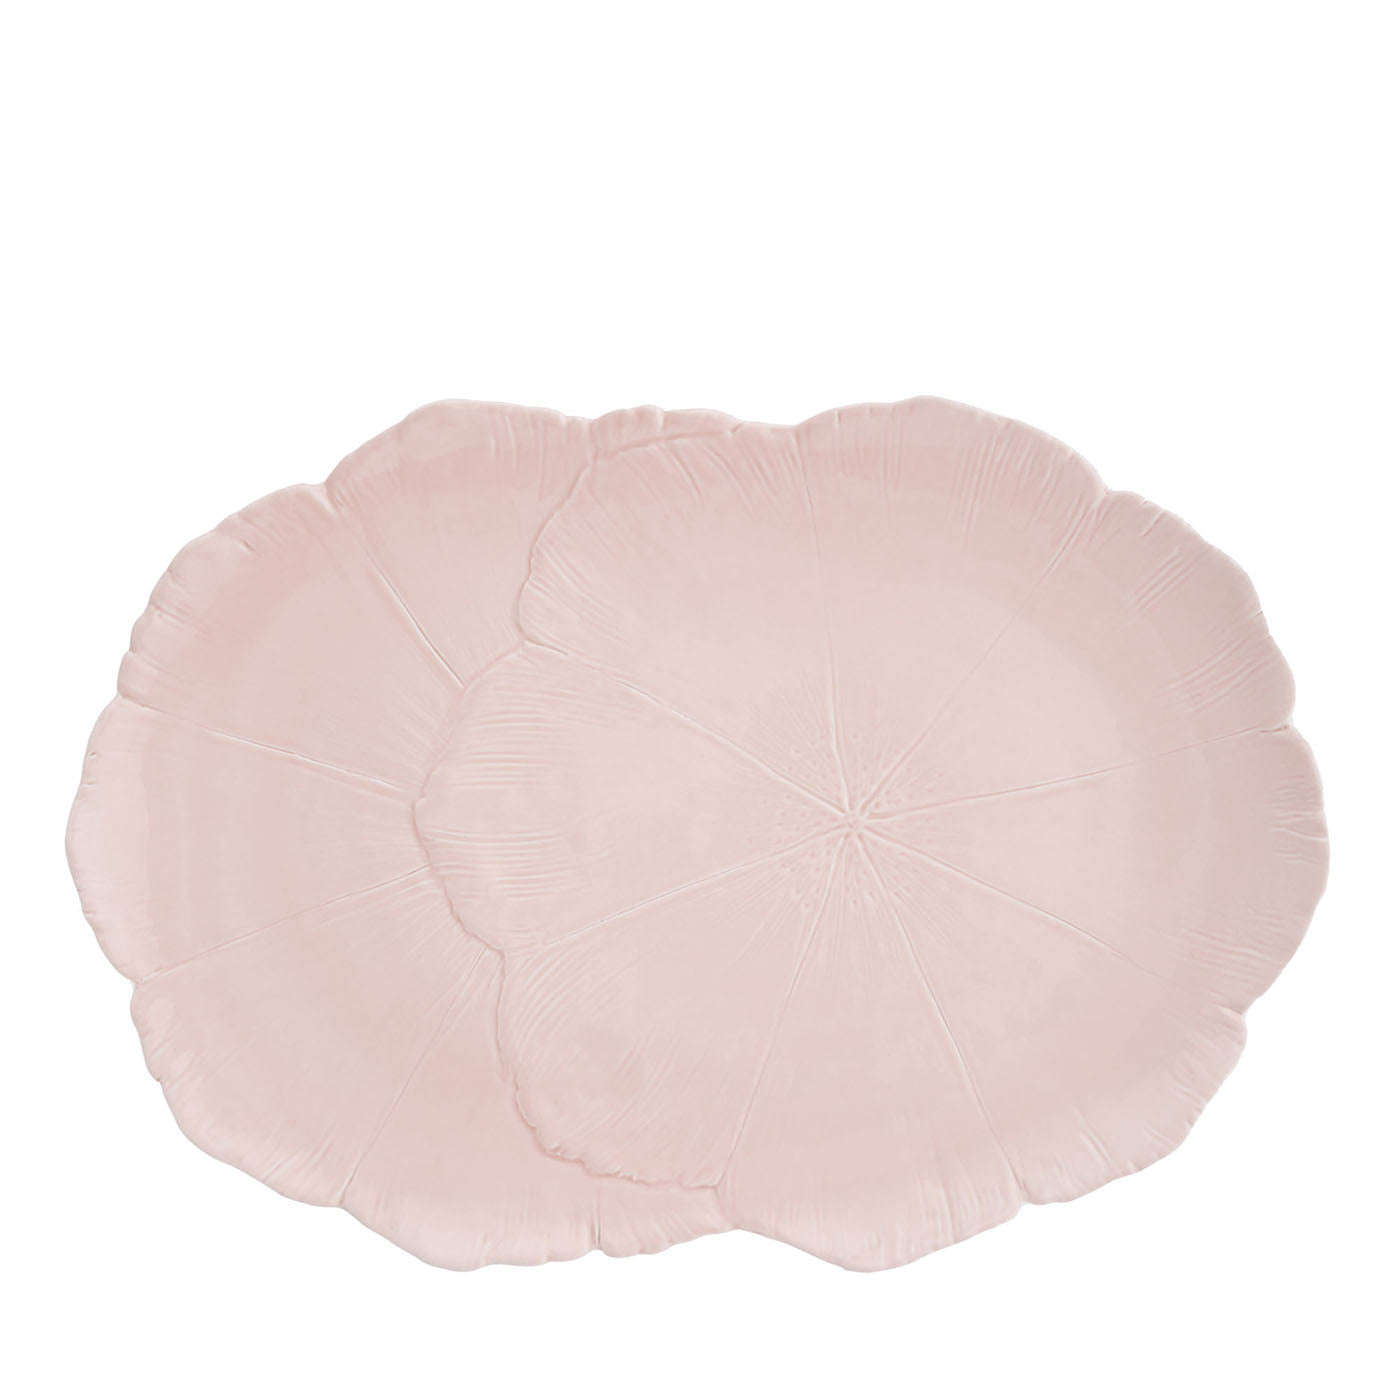 Plato ovalado de cerámica fina rosa cerezo en flor  - Vista principal